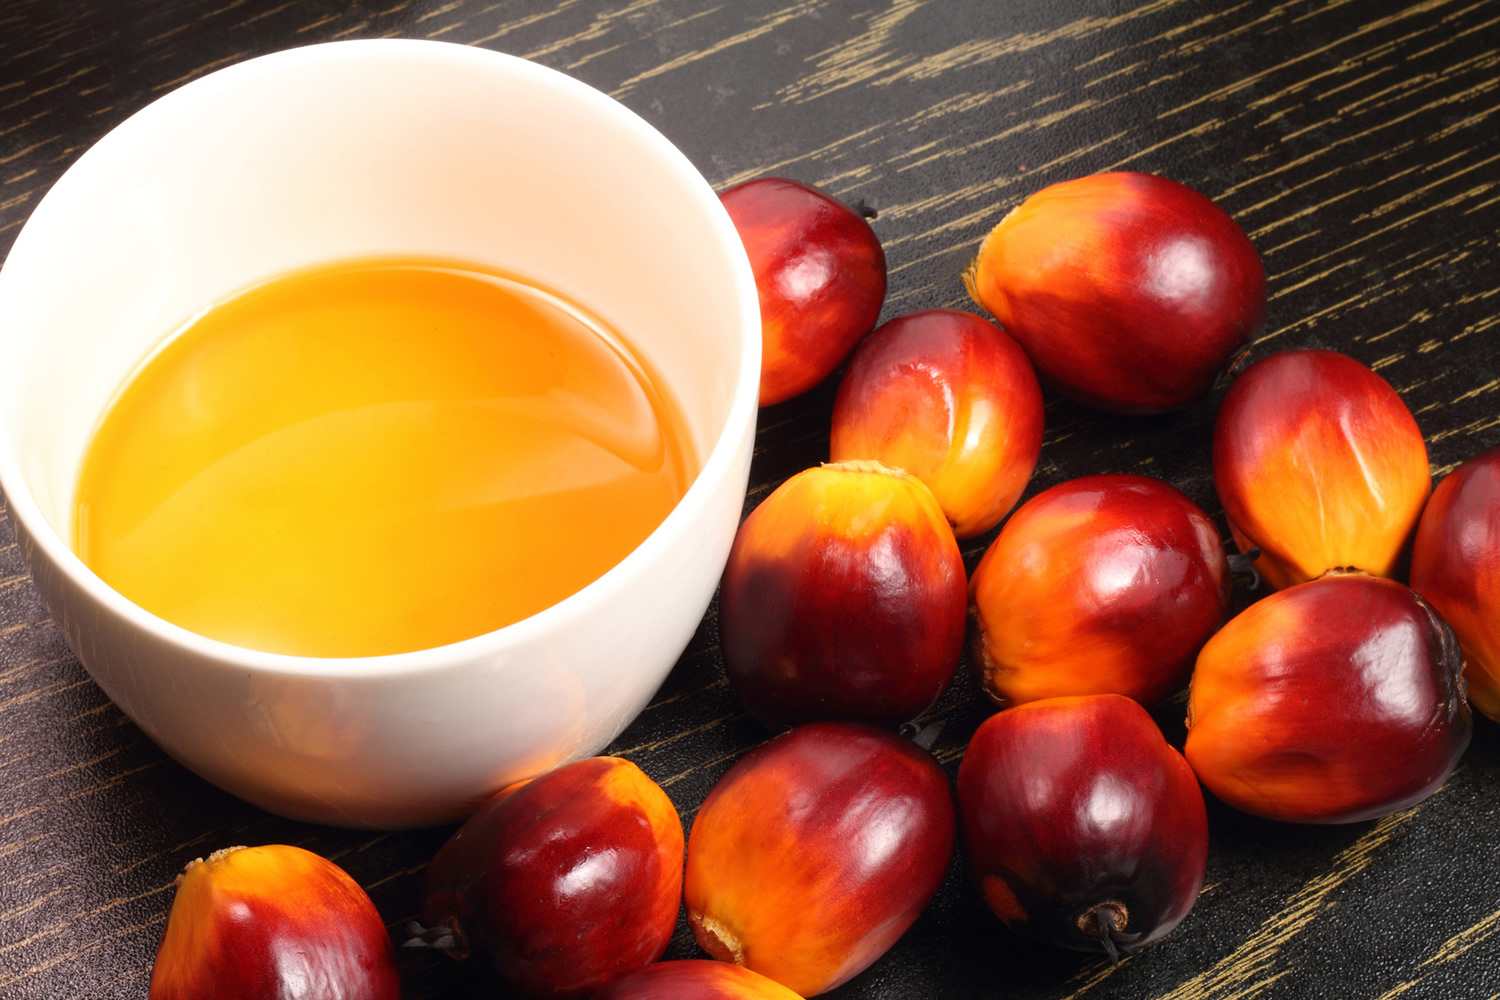 Palm kernel oil, Refined - ead48